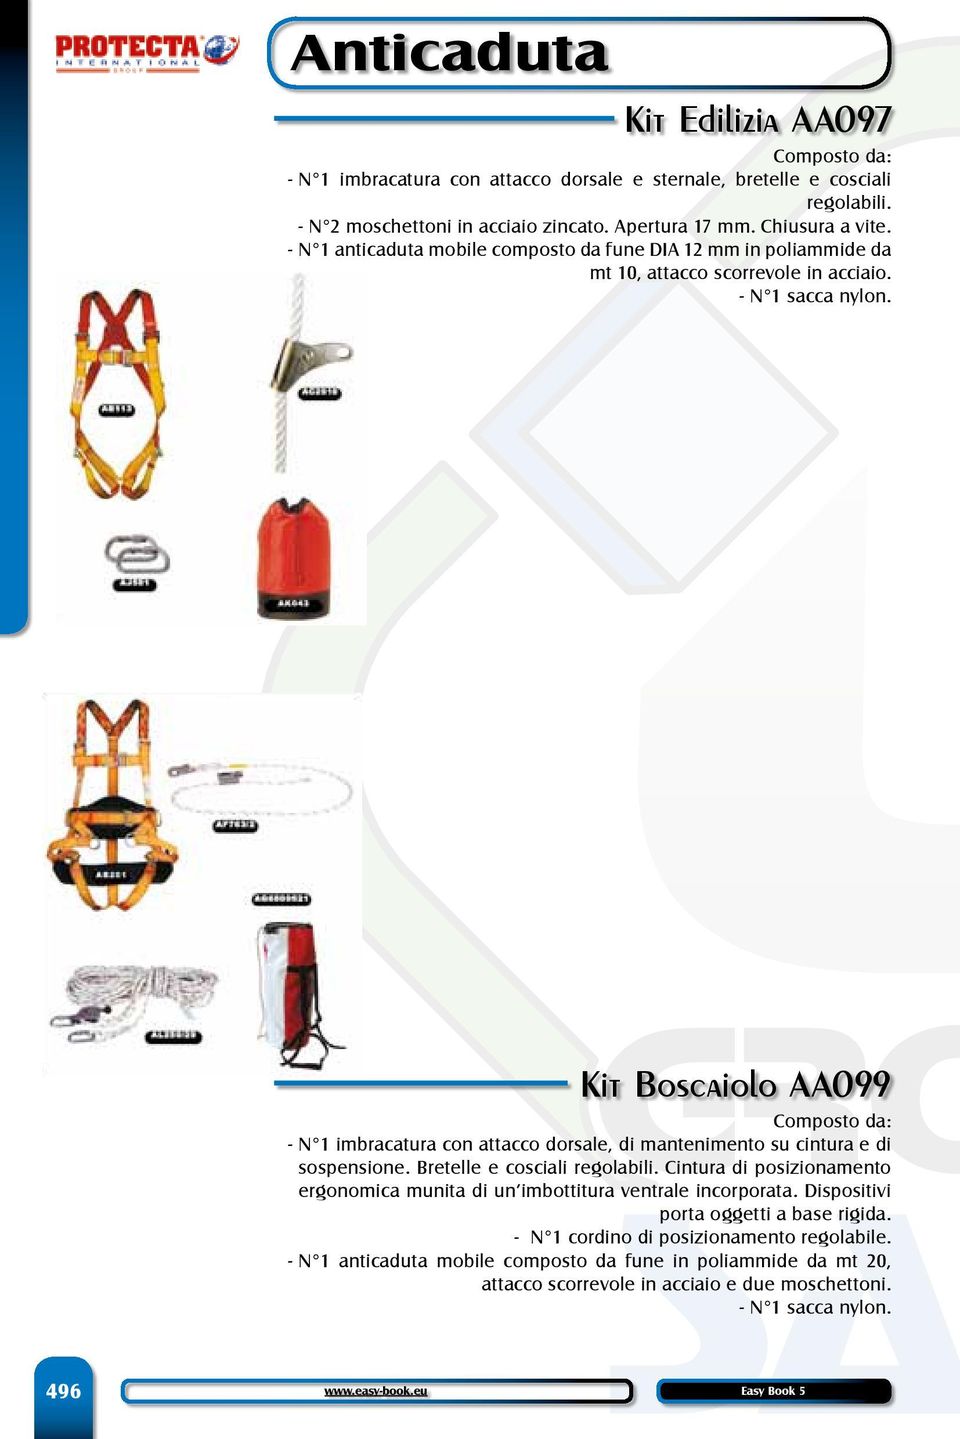 Kit Boscaiolo AA099 Composto da: - N 1 imbracatura con attacco dorsale, di mantenimento su cintura e di sospensione. Bretelle e cosciali regolabili.